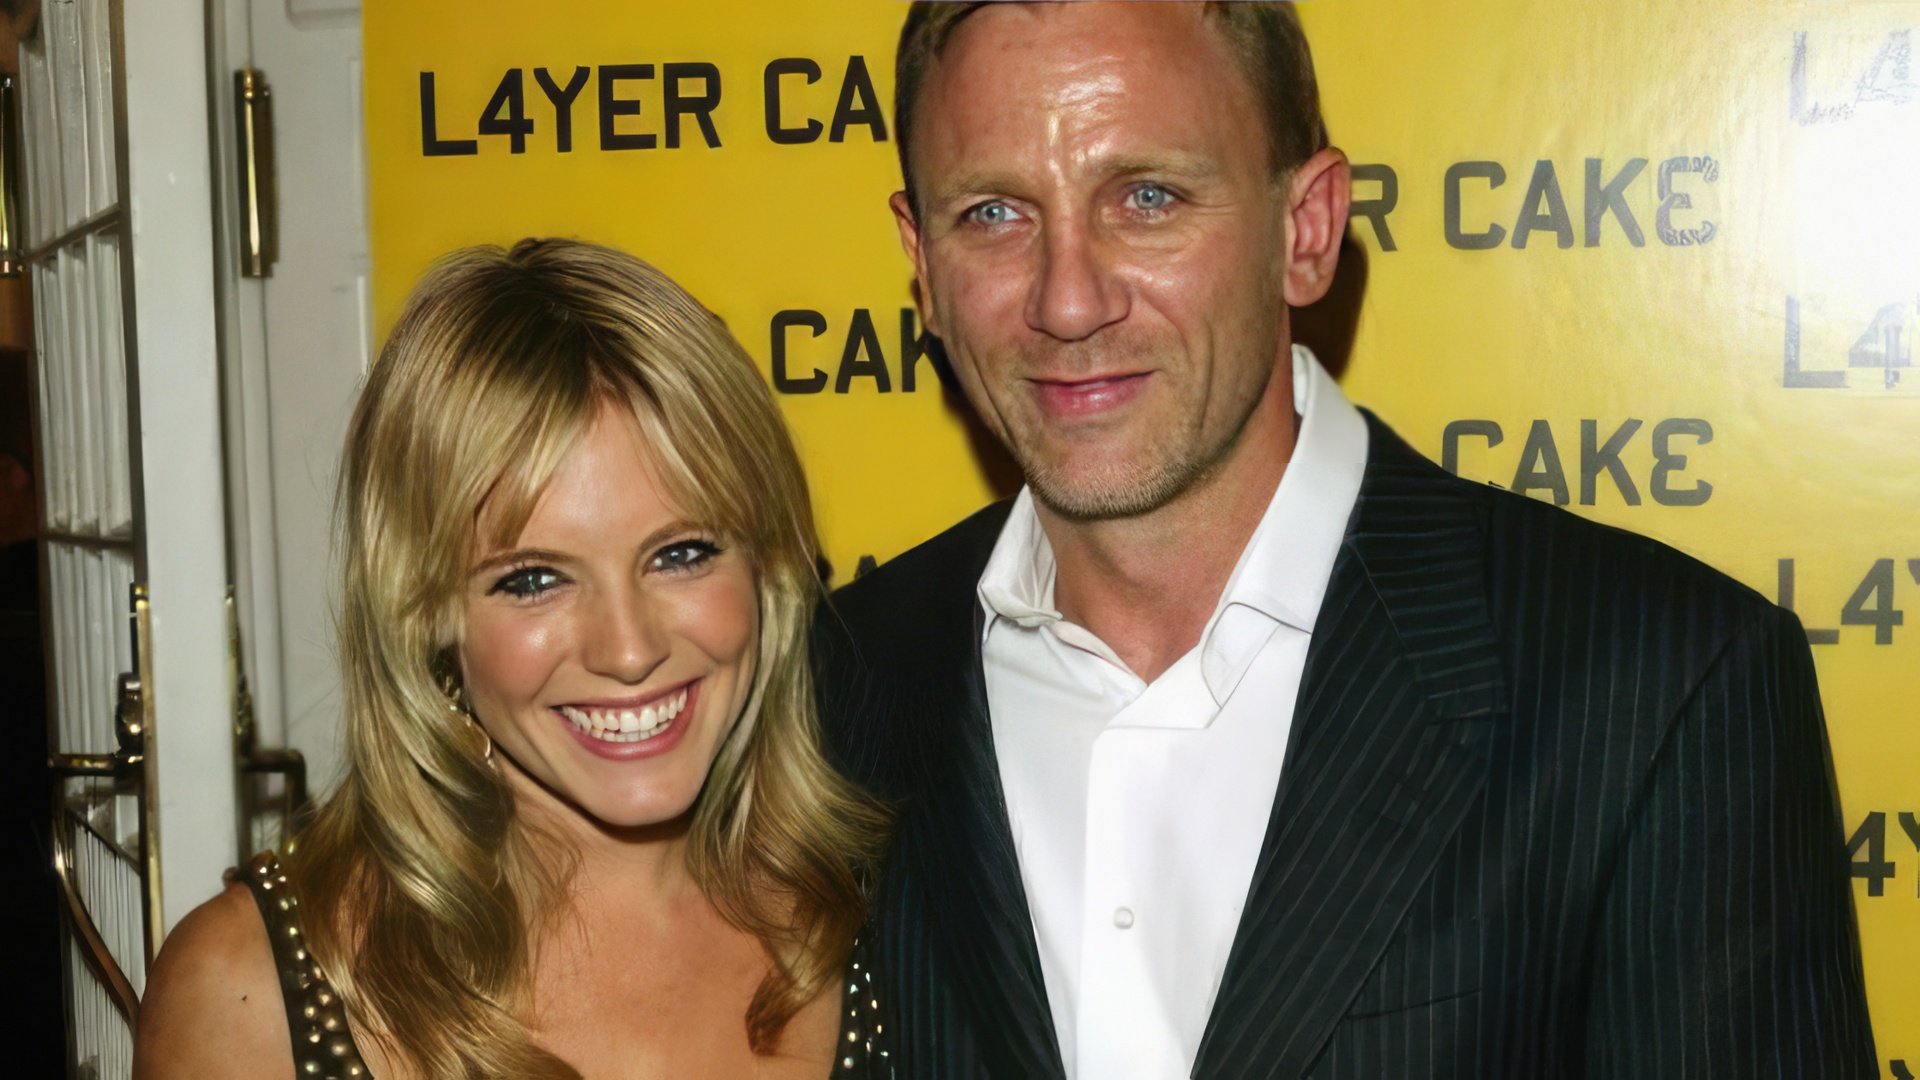 Now Daniel Craig is married to Rachel Weisz